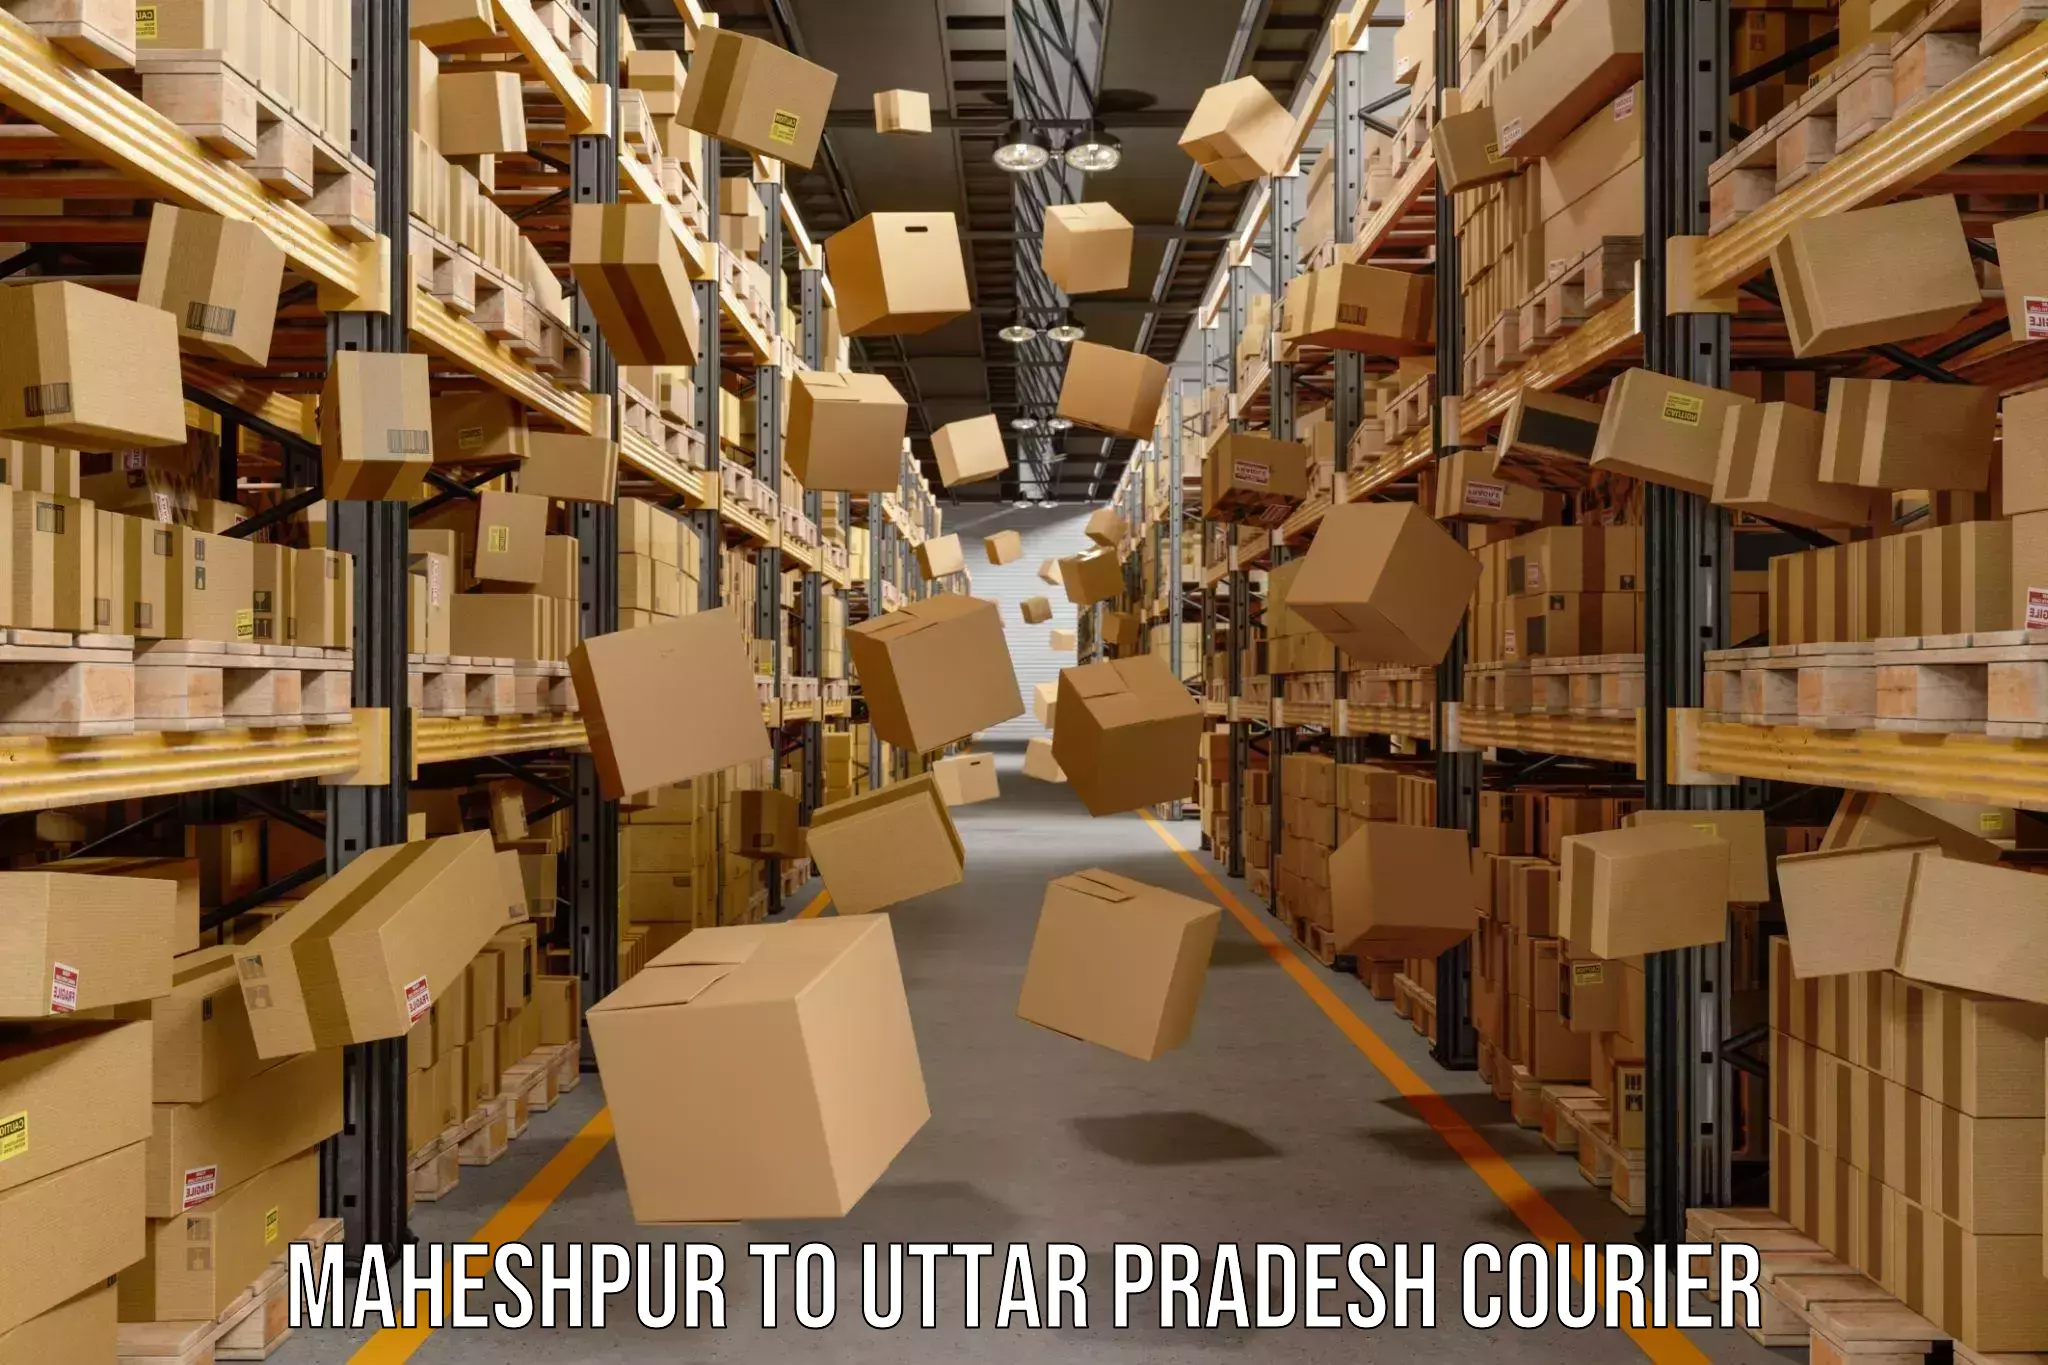 Urgent courier needs Maheshpur to Bhadohi